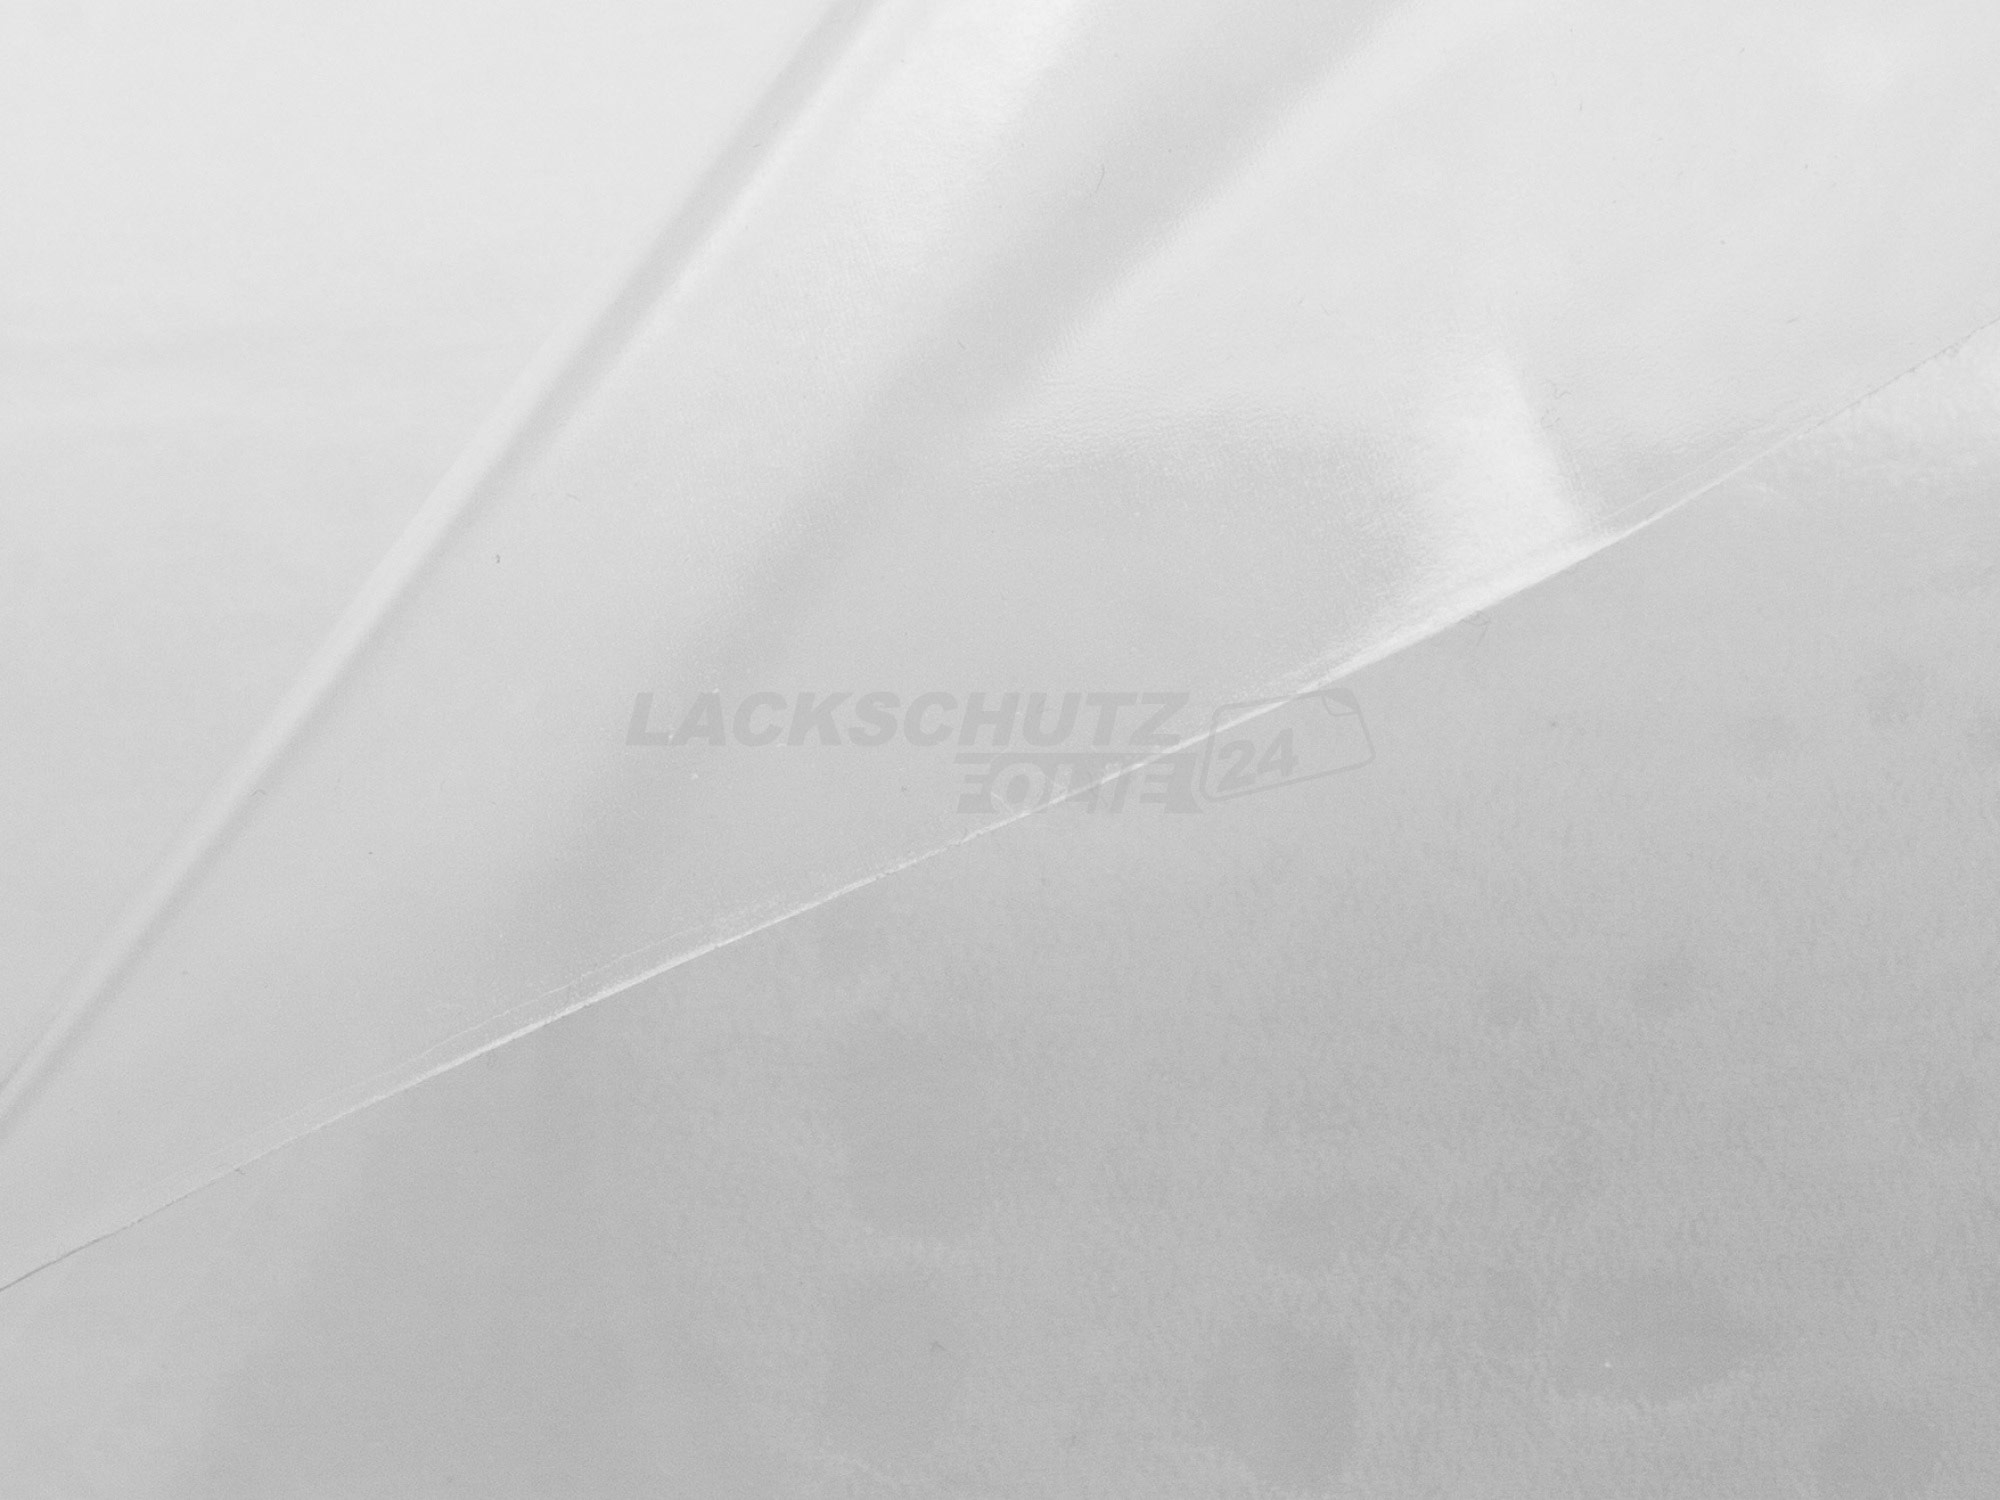 Ladekantenschutzfolie - Transparent Glatt Hochglänzend 150 µm stark für Peugeot 508 RXH Facelift, BJ 09/2014-06/2019